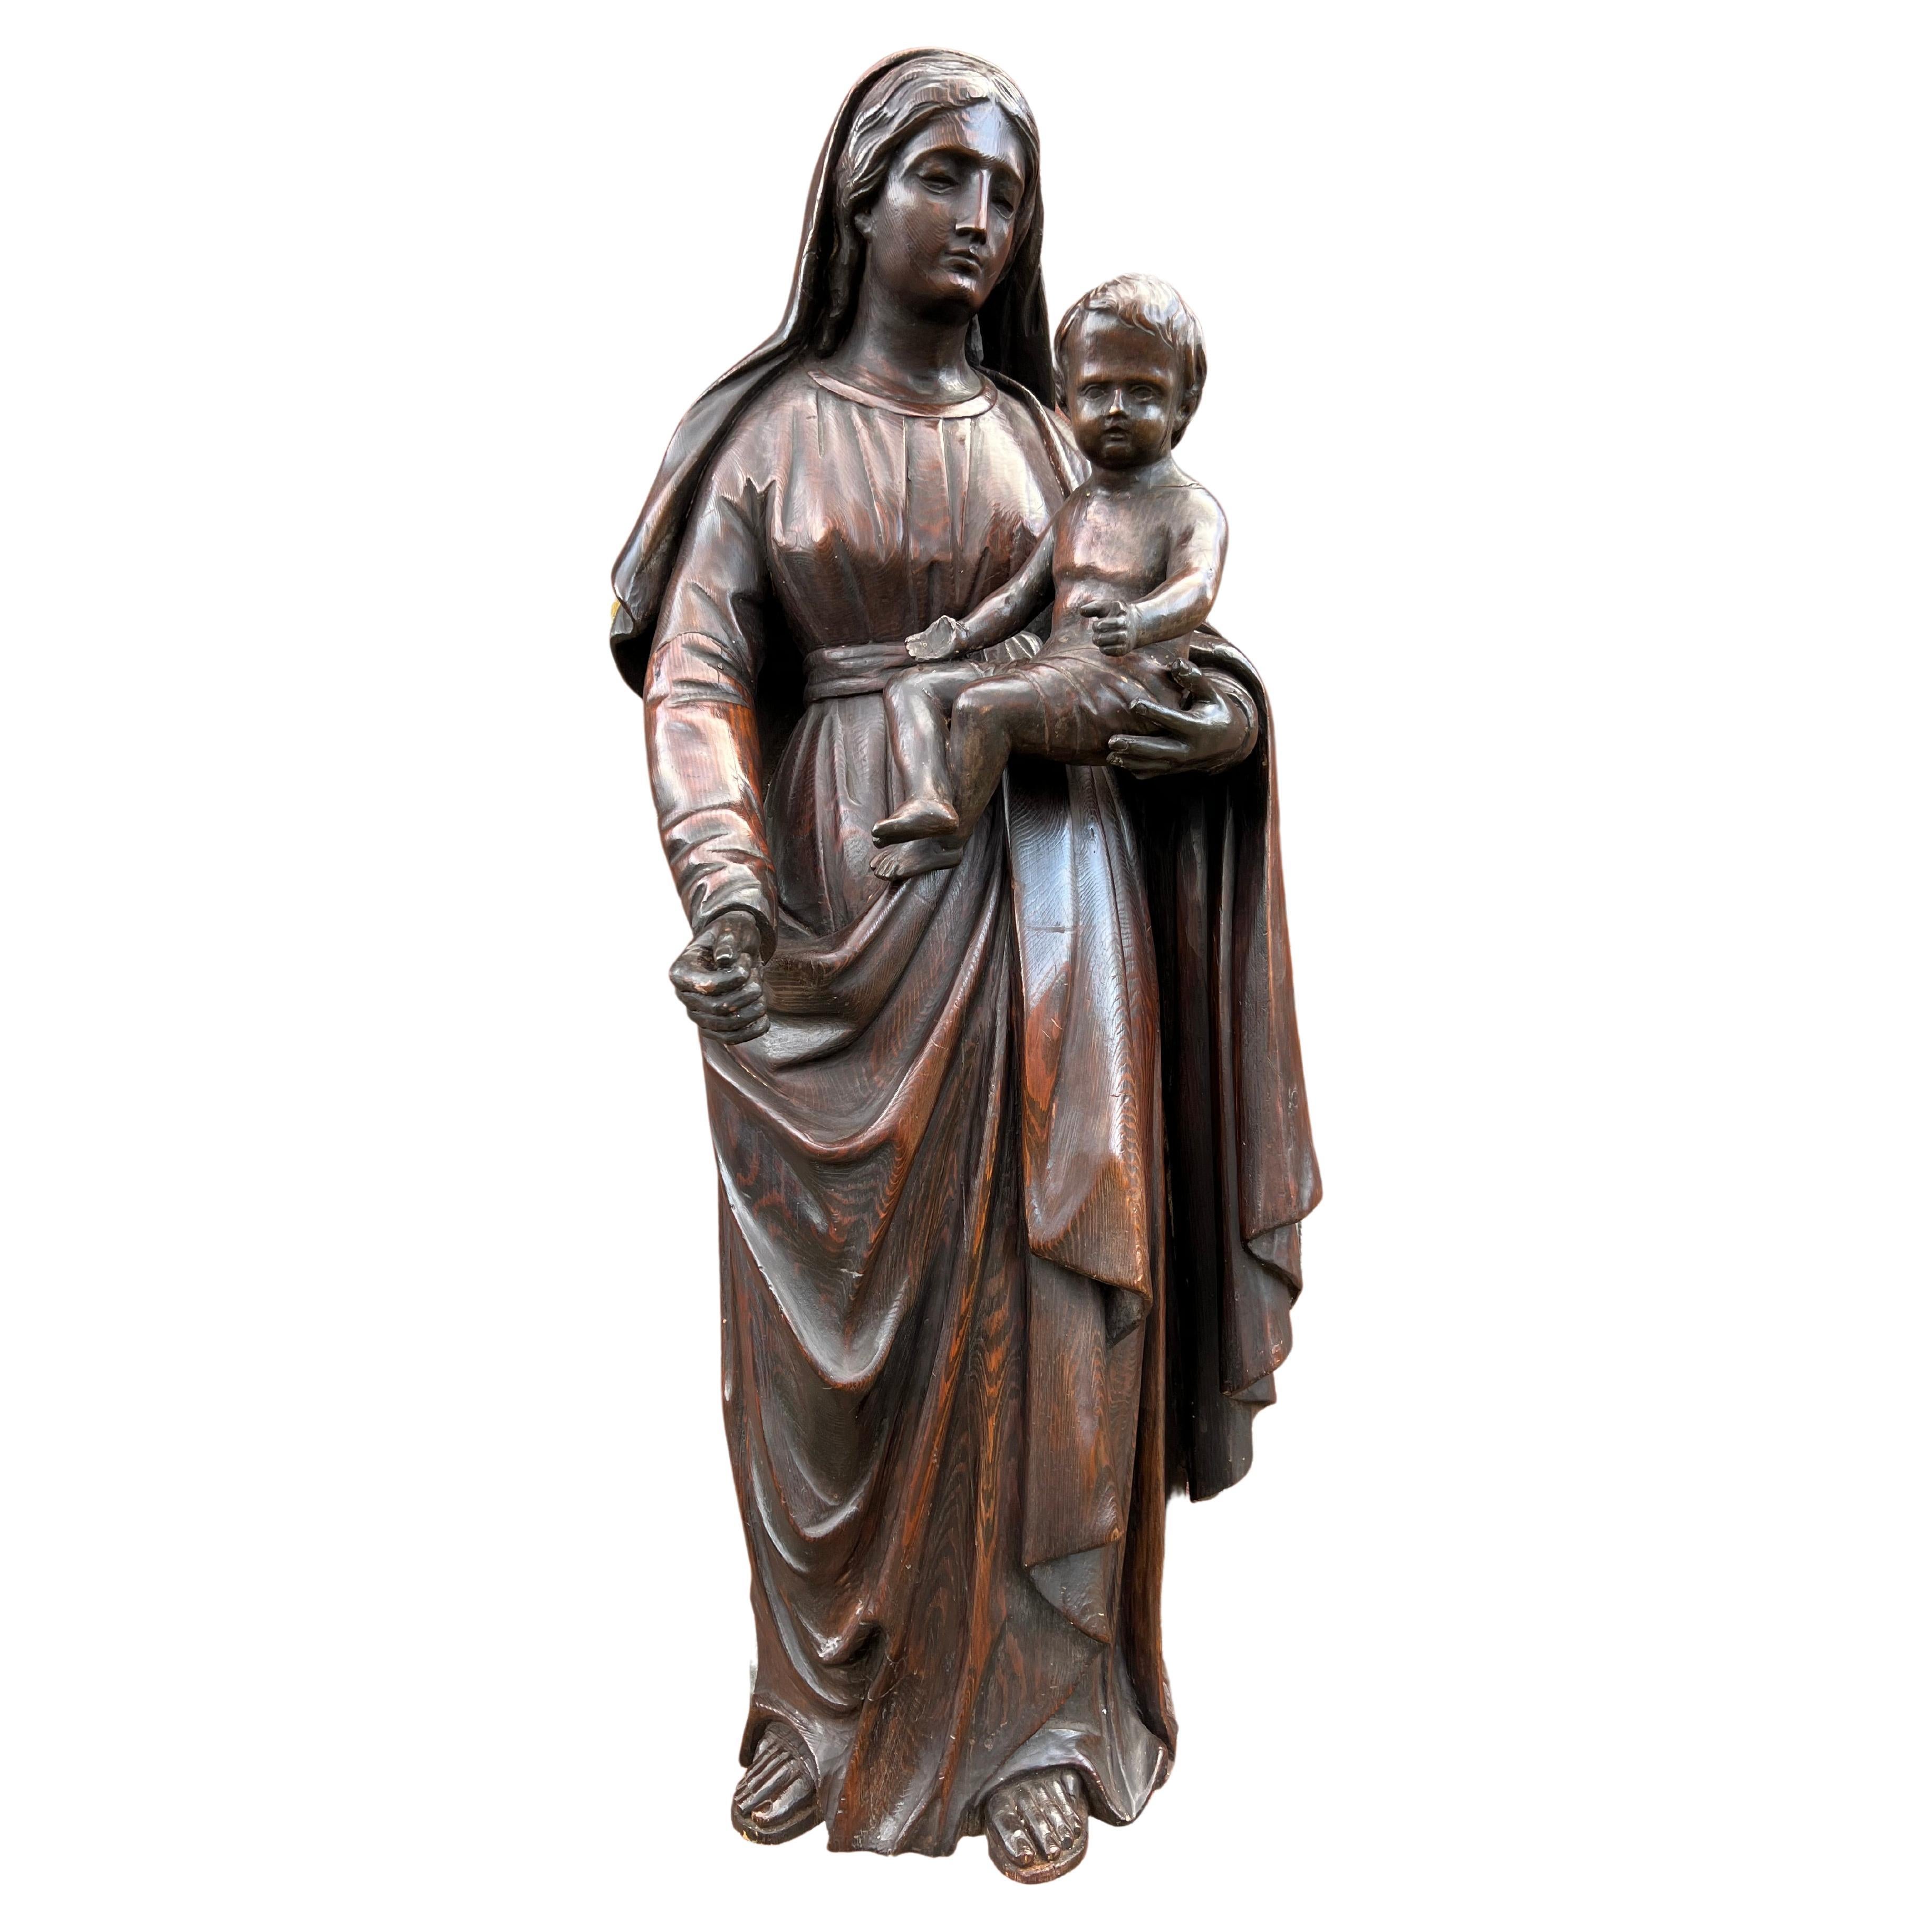 Gute antike Qualität geschnitzte Eichenholzstatue der Mutter Maria und des Kindes Jesus